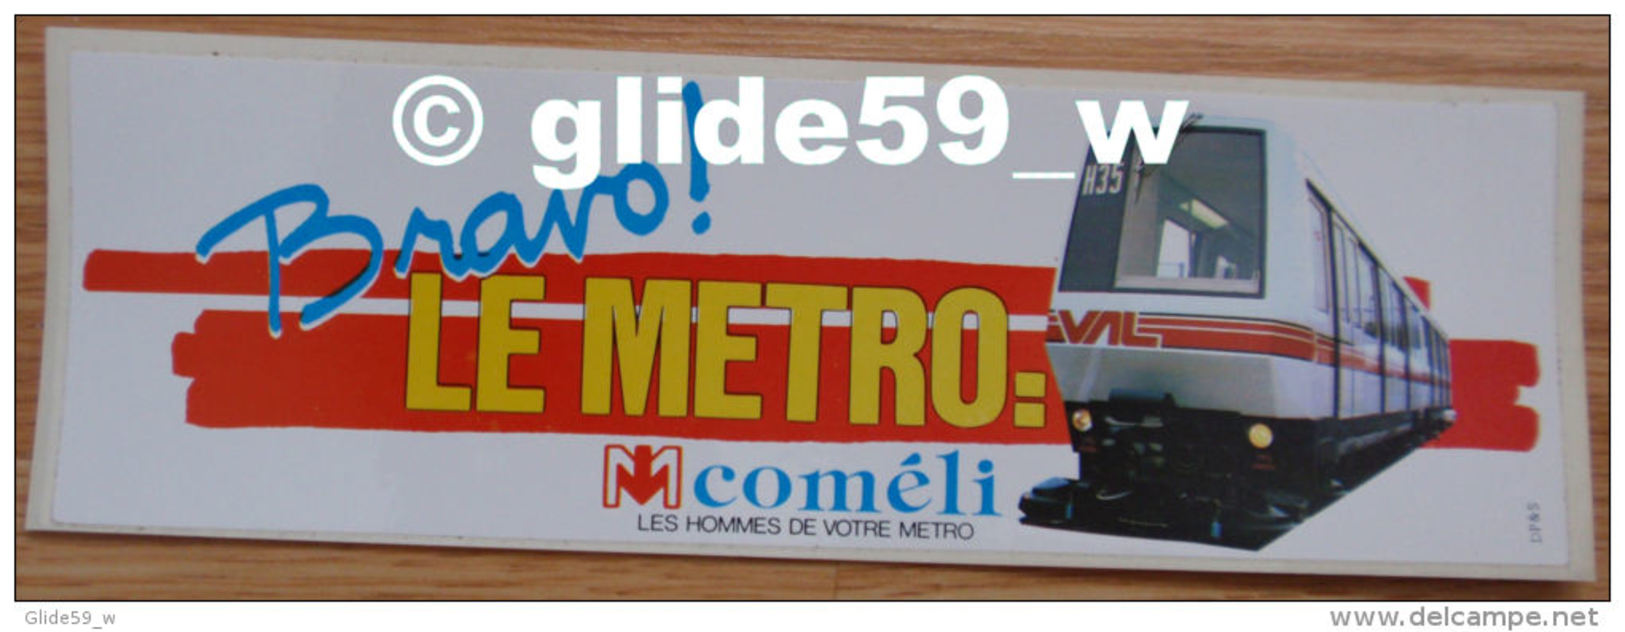 Autocollant - Bravo ! LE METRO: VAL - Coméli - Les Hommes De Votre Métro (Lille) - Stickers